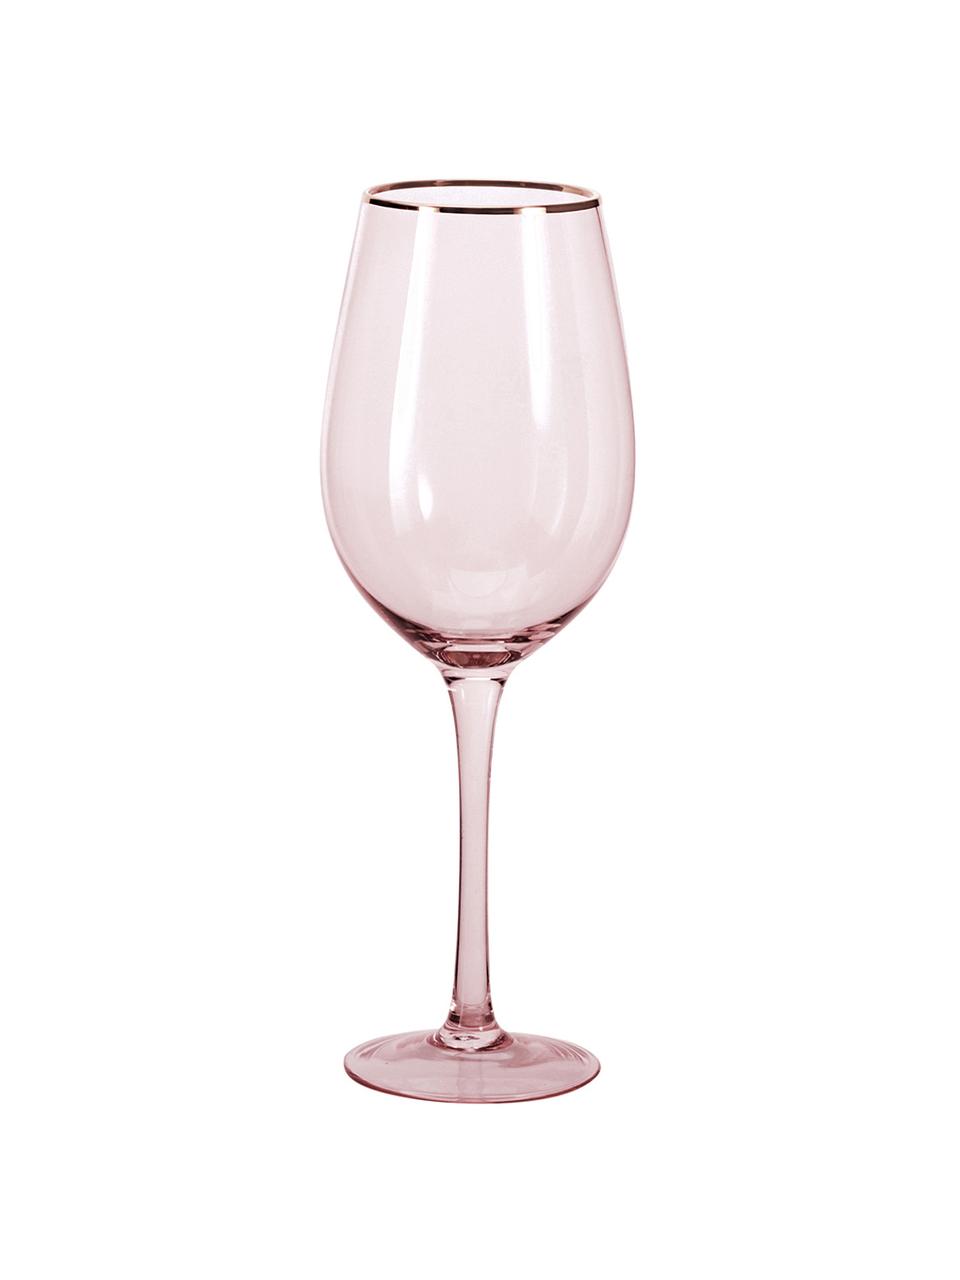 Weingläser Chloe in Rosa mit Goldrand, 4 Stück, Glas, Pfirsich, Ø 9 x H 26 cm